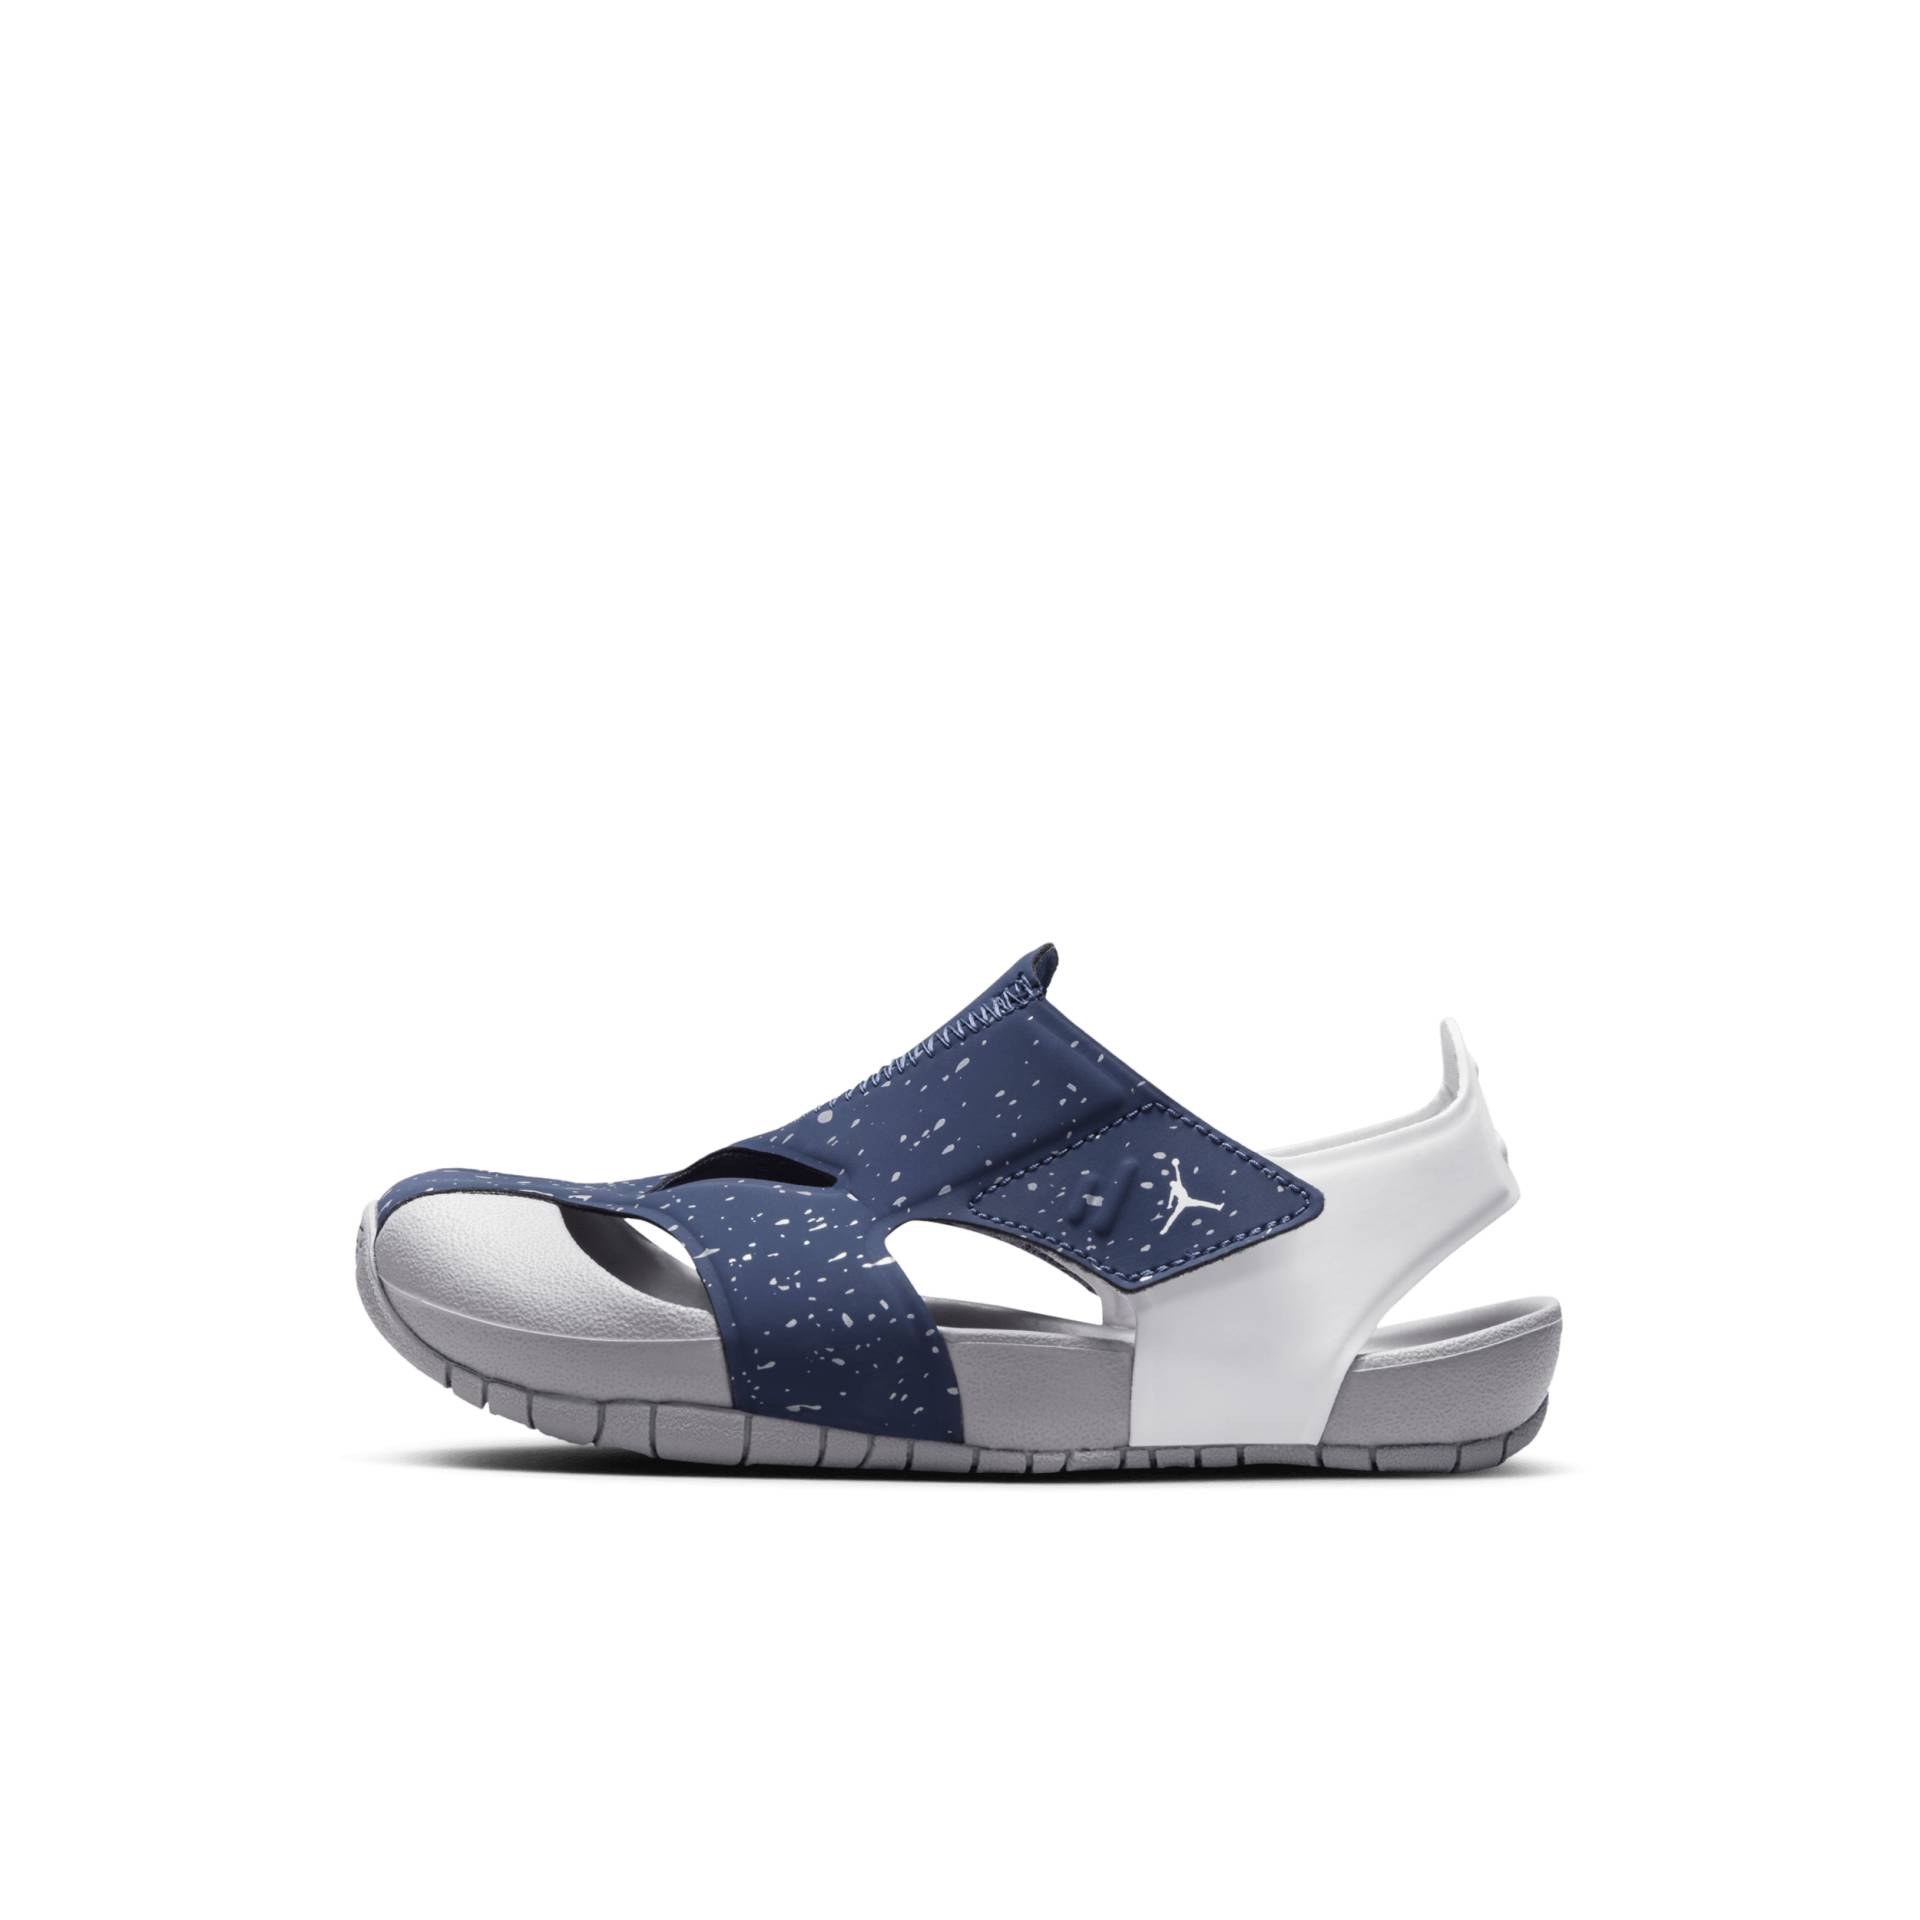 Jordan Flare Schuh für jüngere Kinder - Blau von Jordan